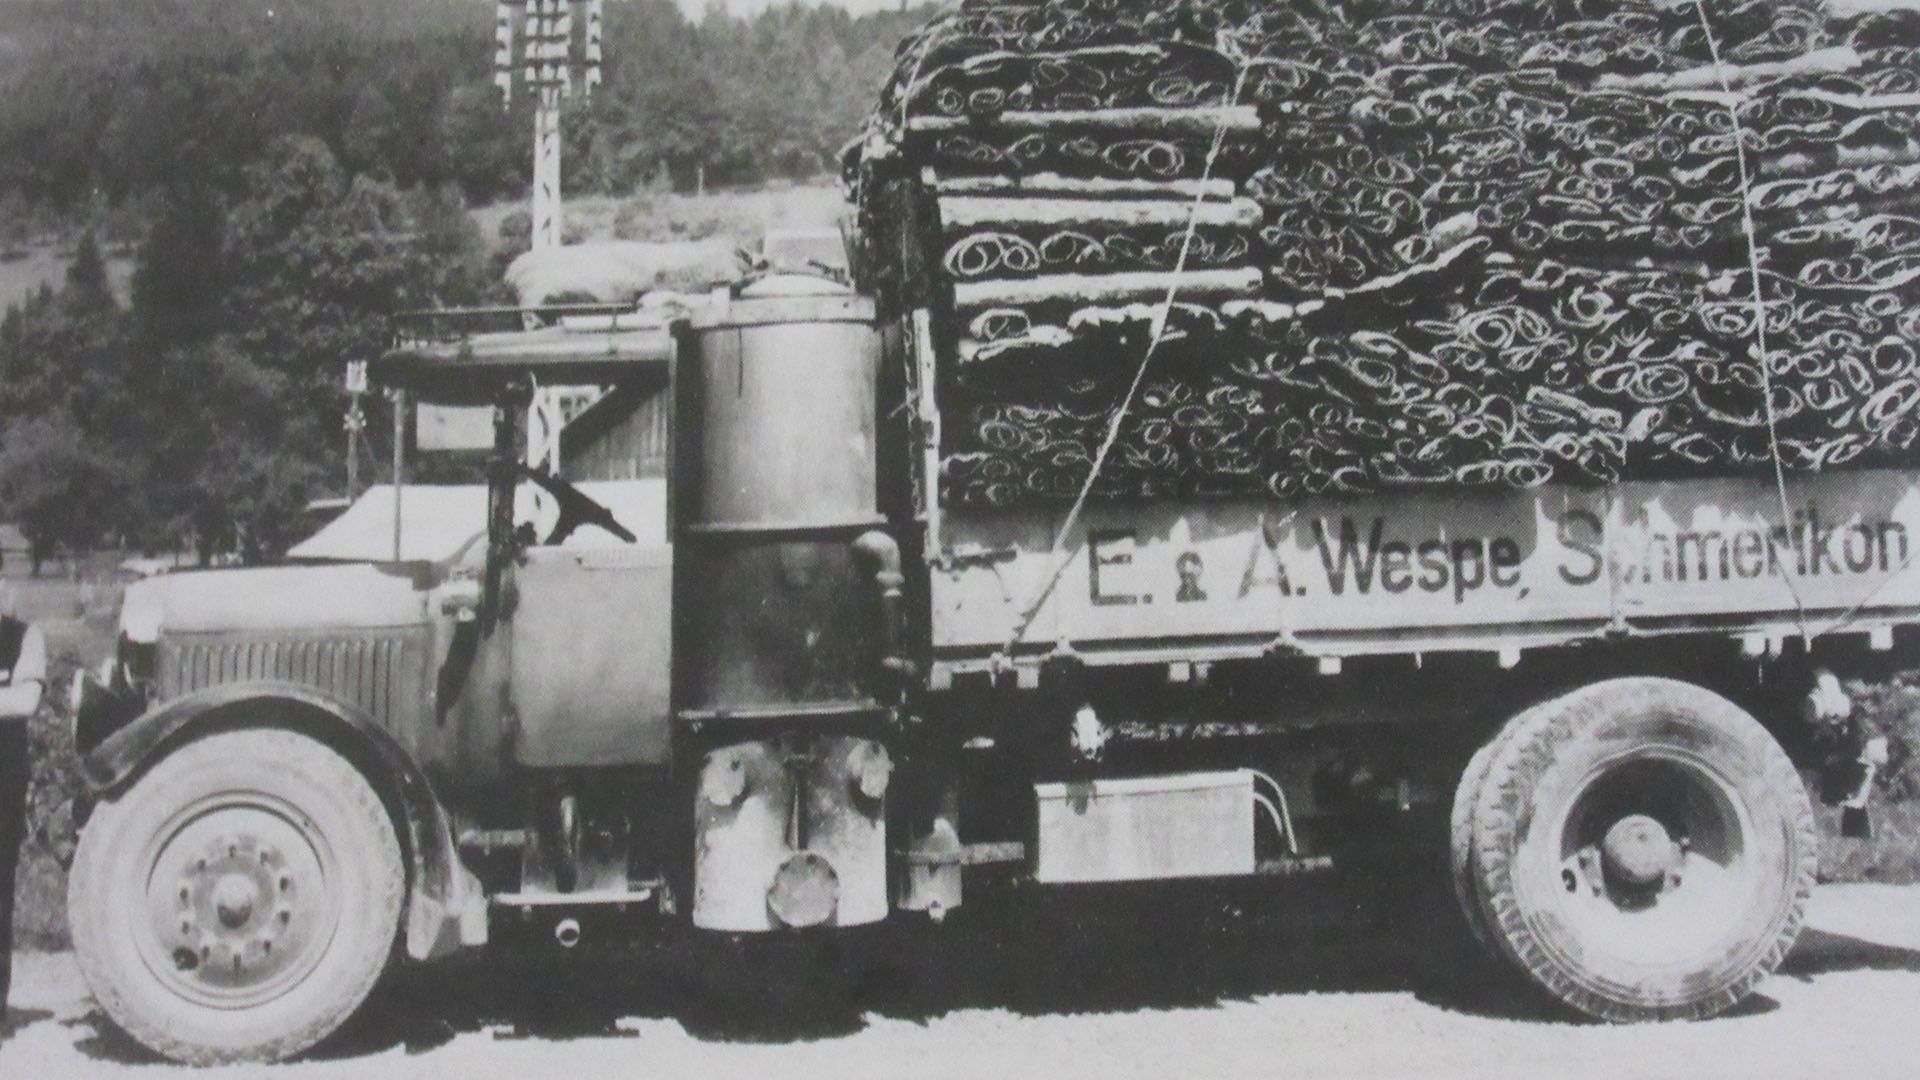 Altes Bild eines Wespe-Transports